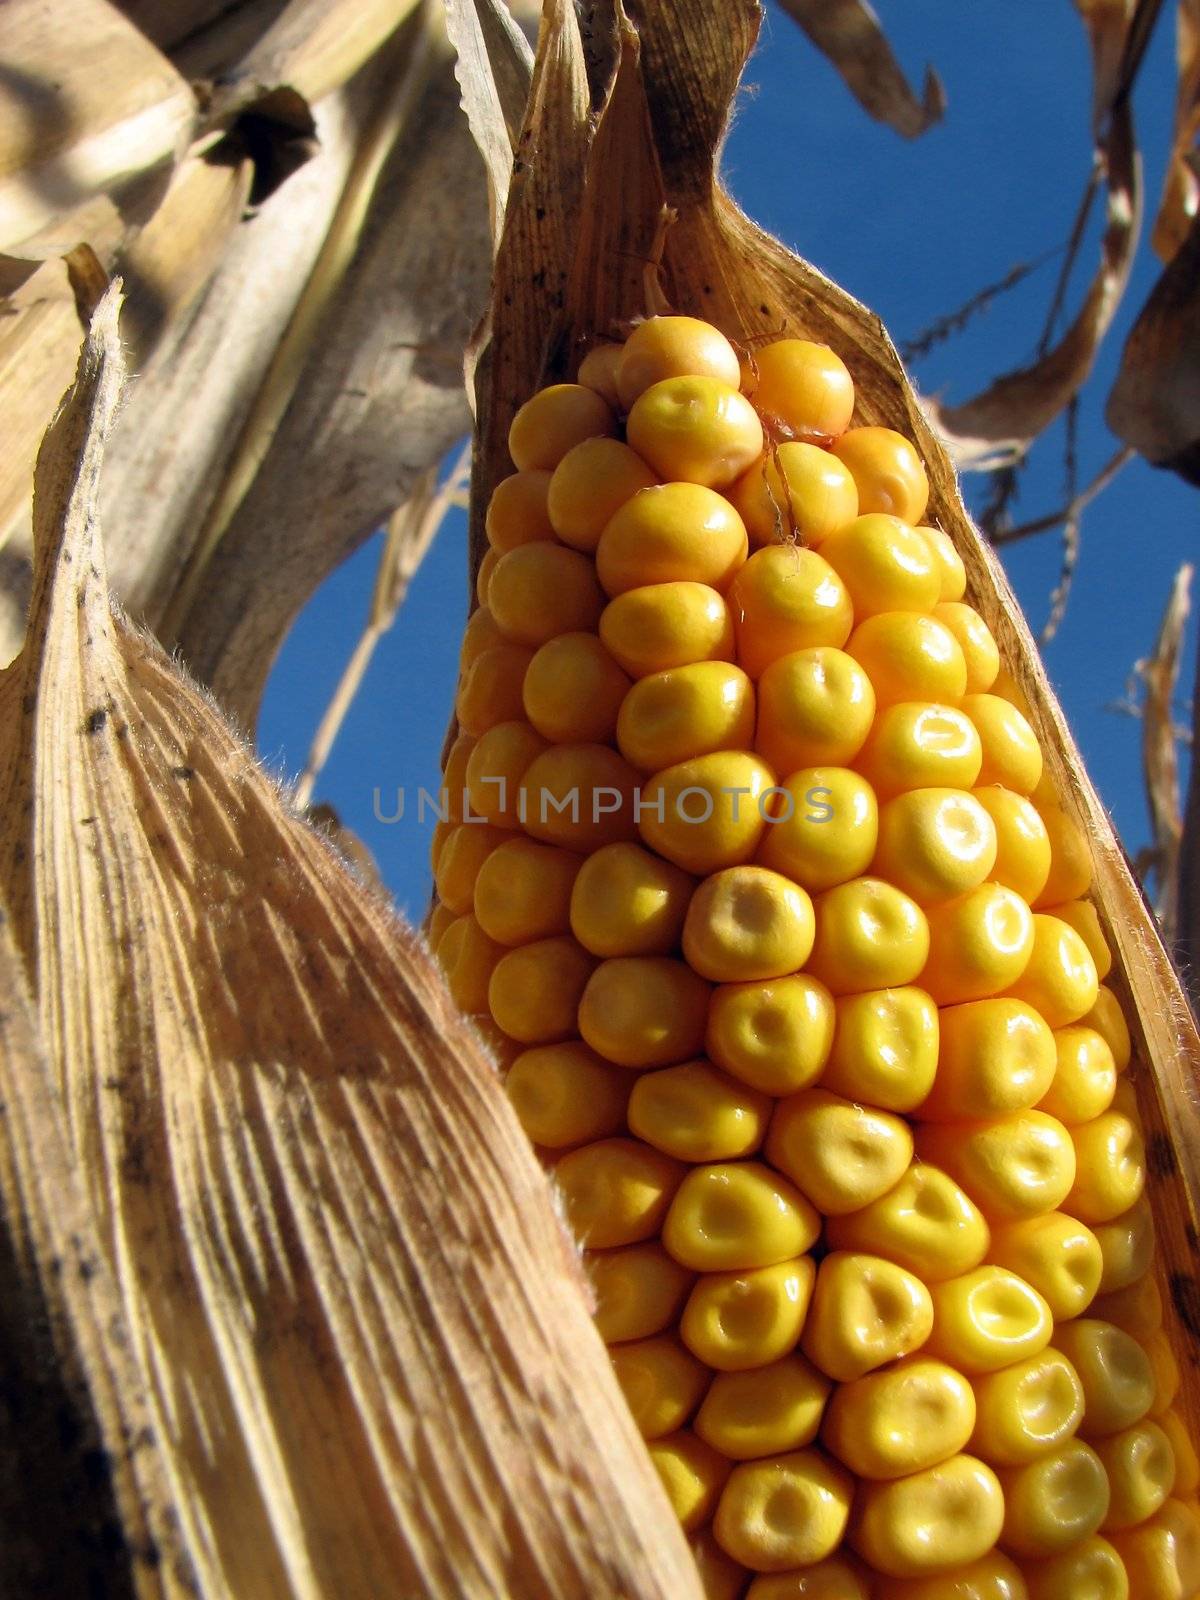 Closeup of a corn cob in the cornfield.